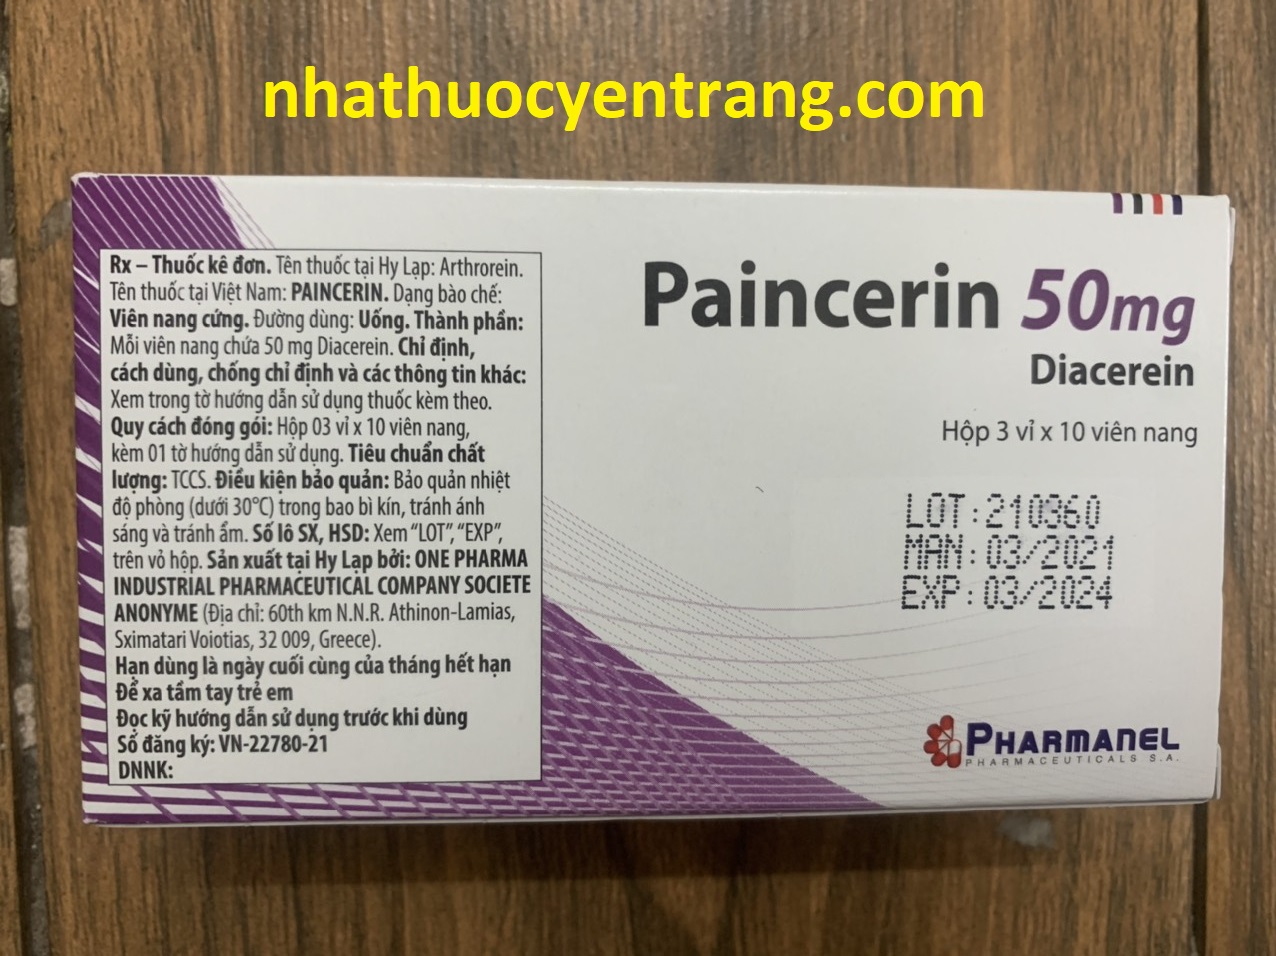 Paincerin 50mg